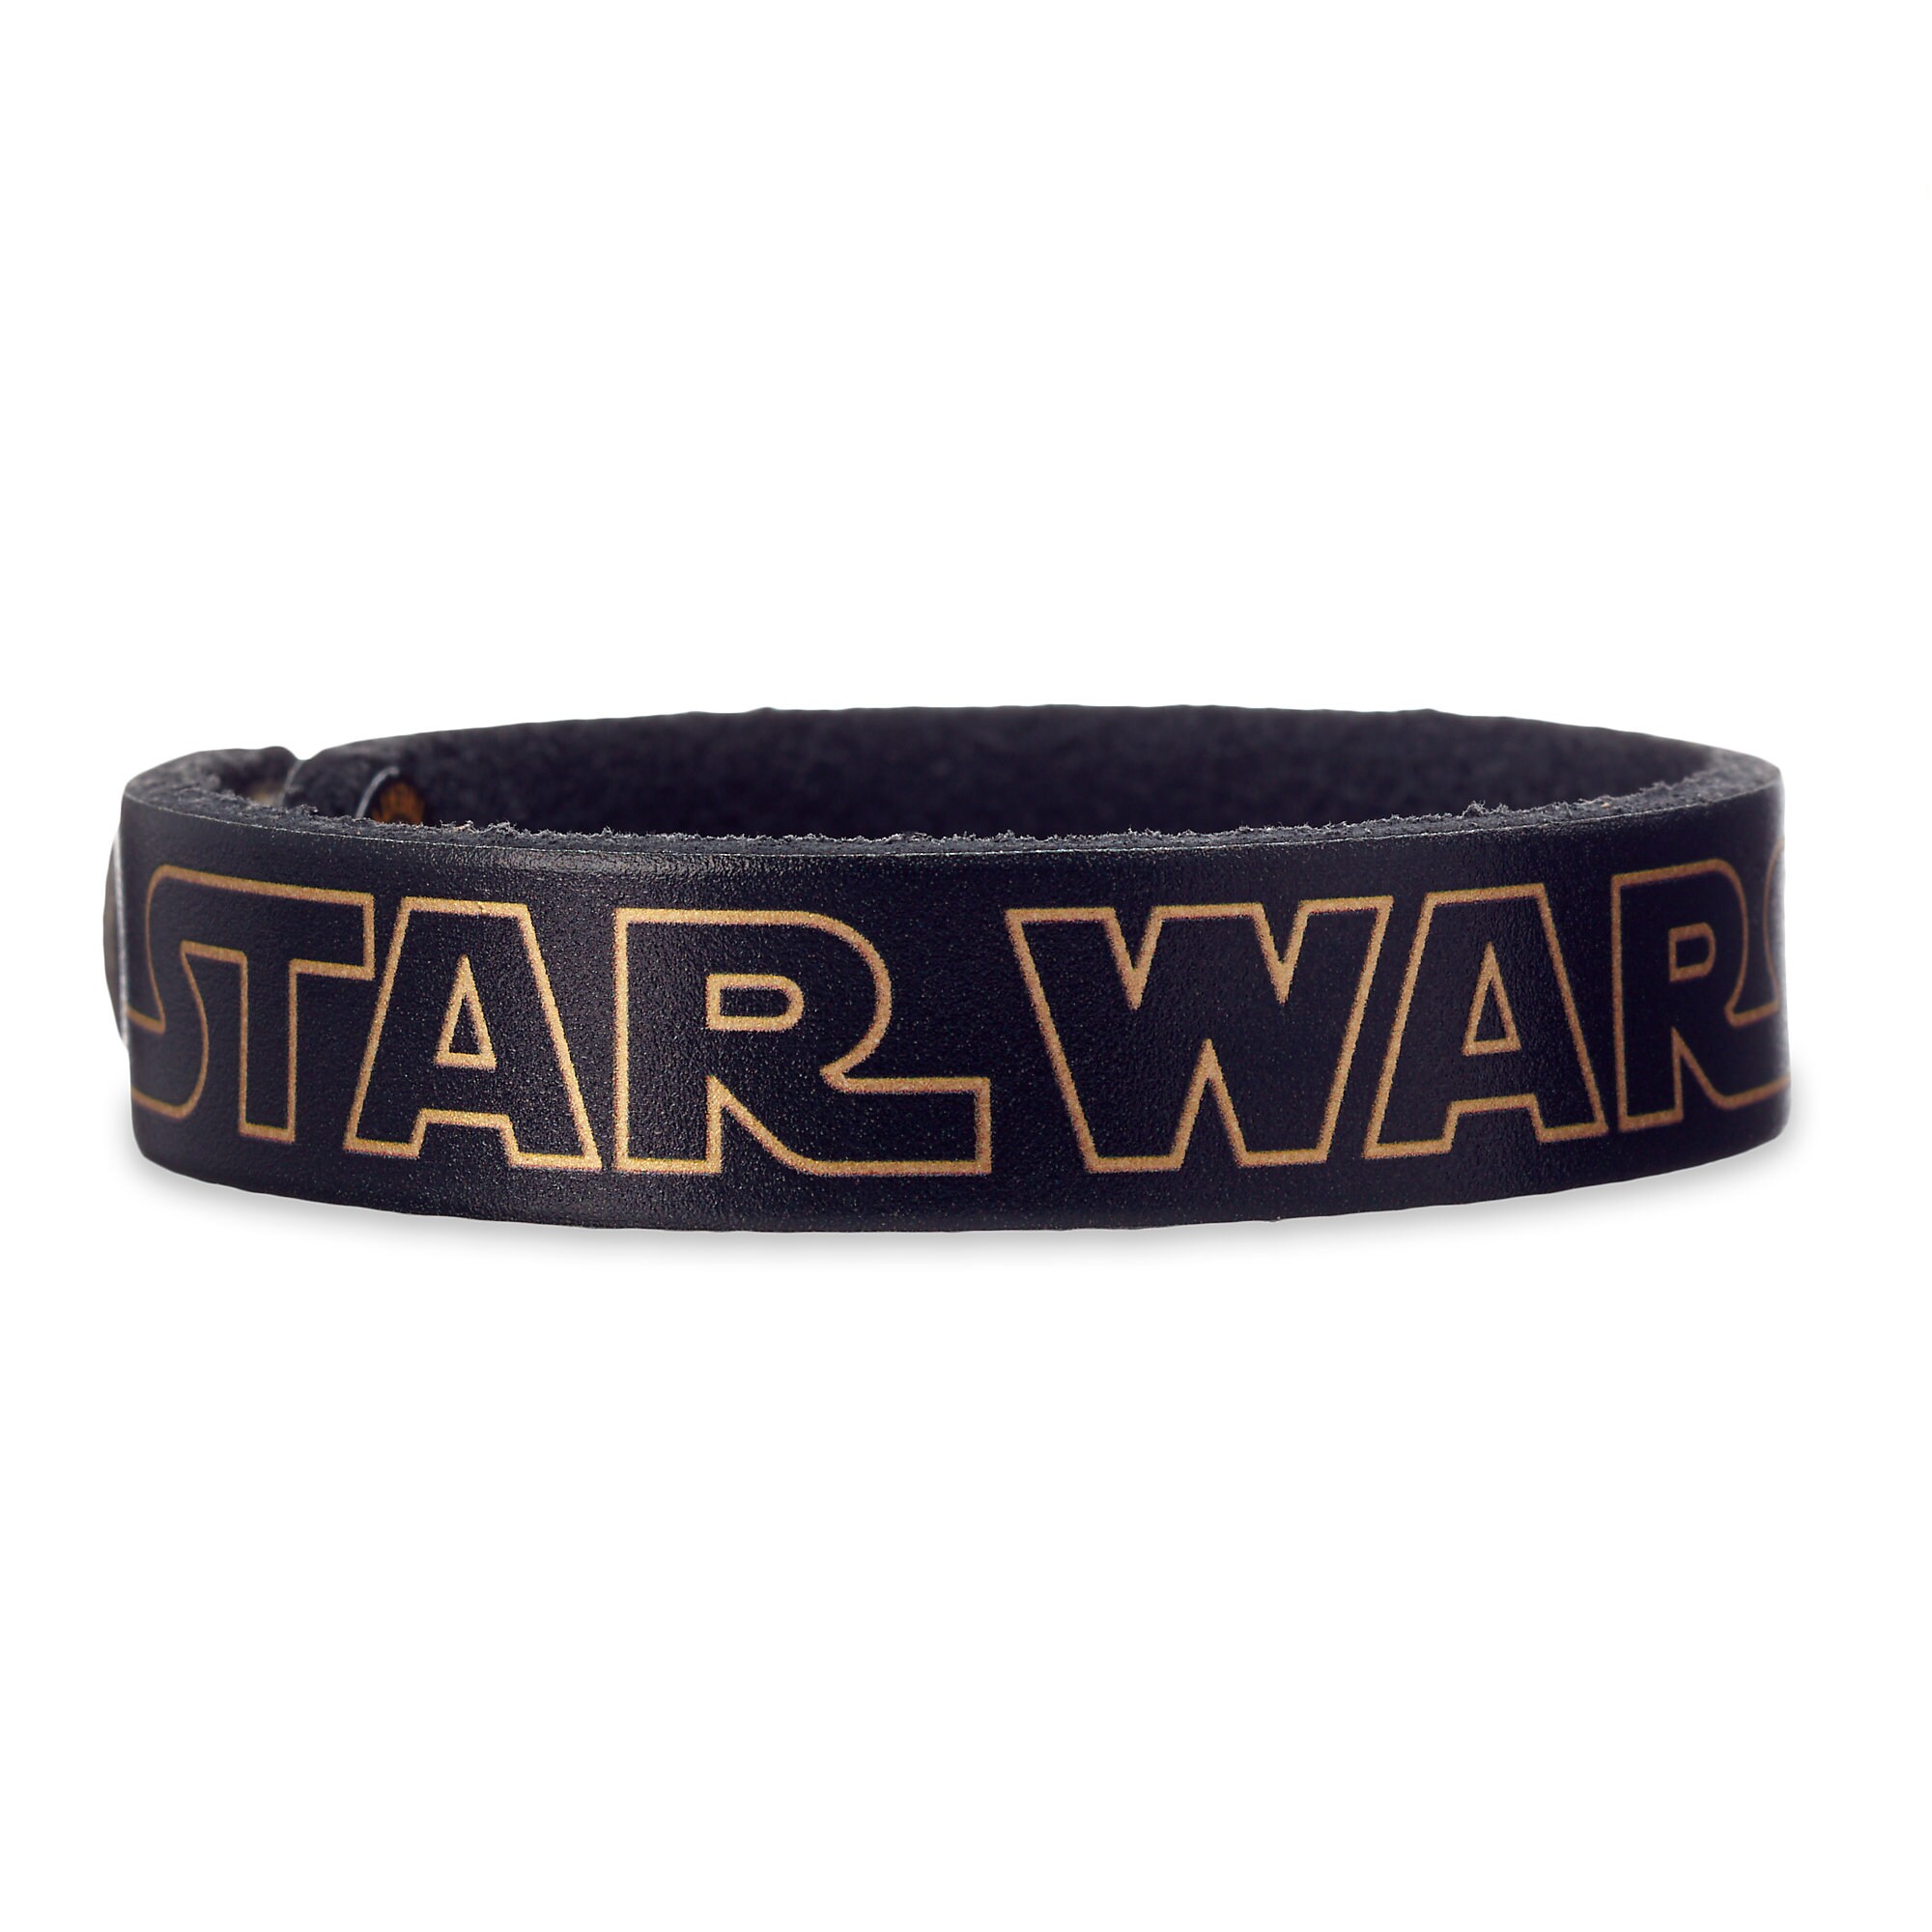 Star Wars Logo Leather Bracelet - Personalizable